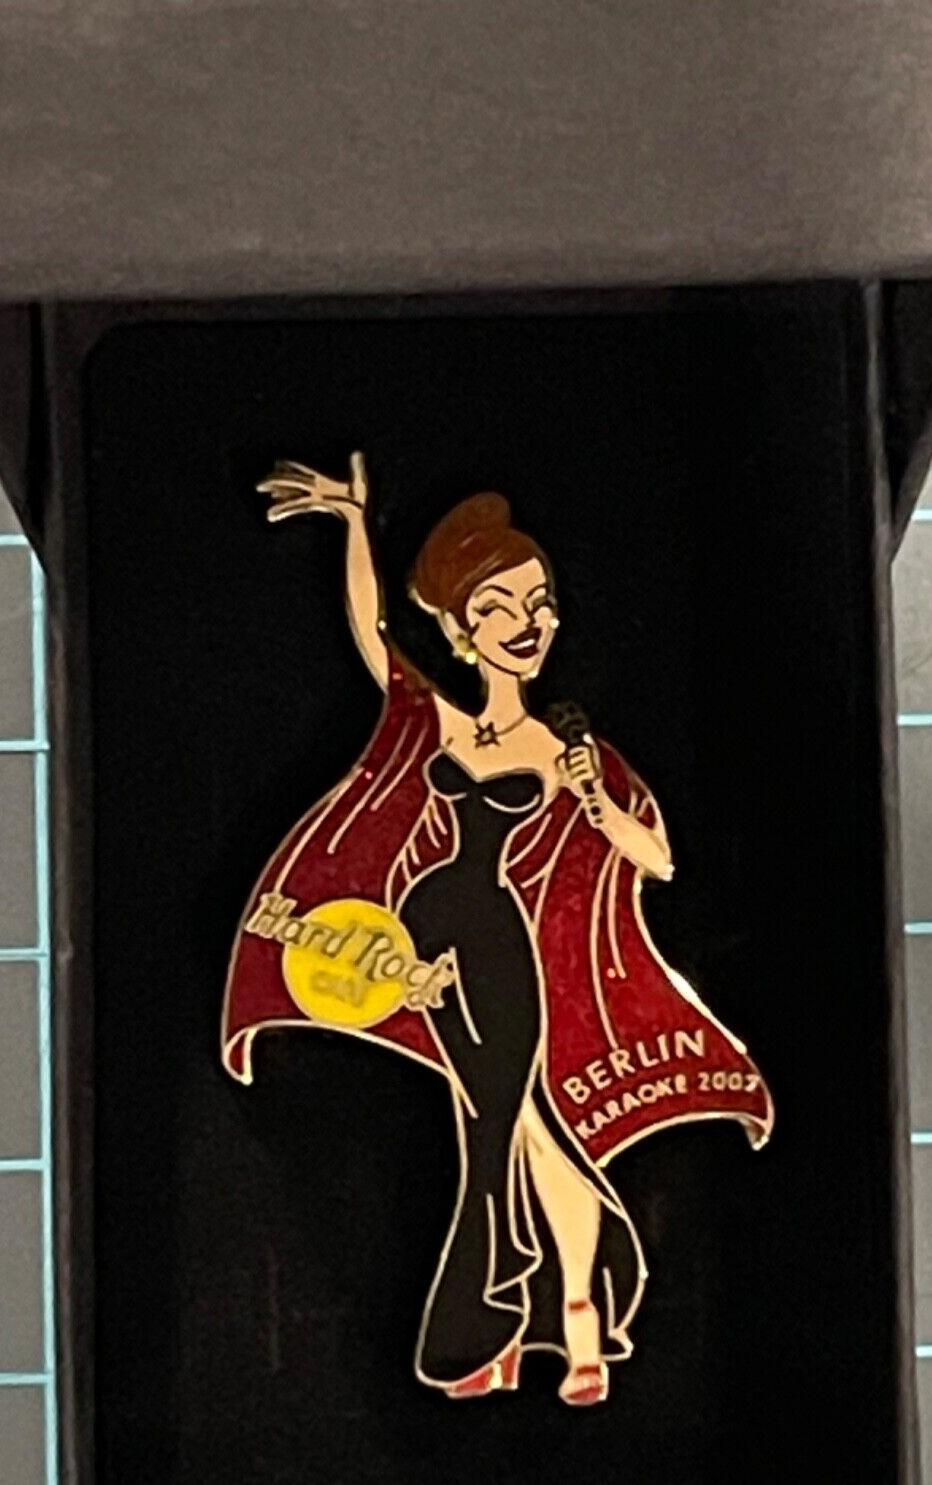 Hard Rock Cafe  BERLIN KARAOKE  Classy Brunette GIRL Lapel Pin with Gift Box